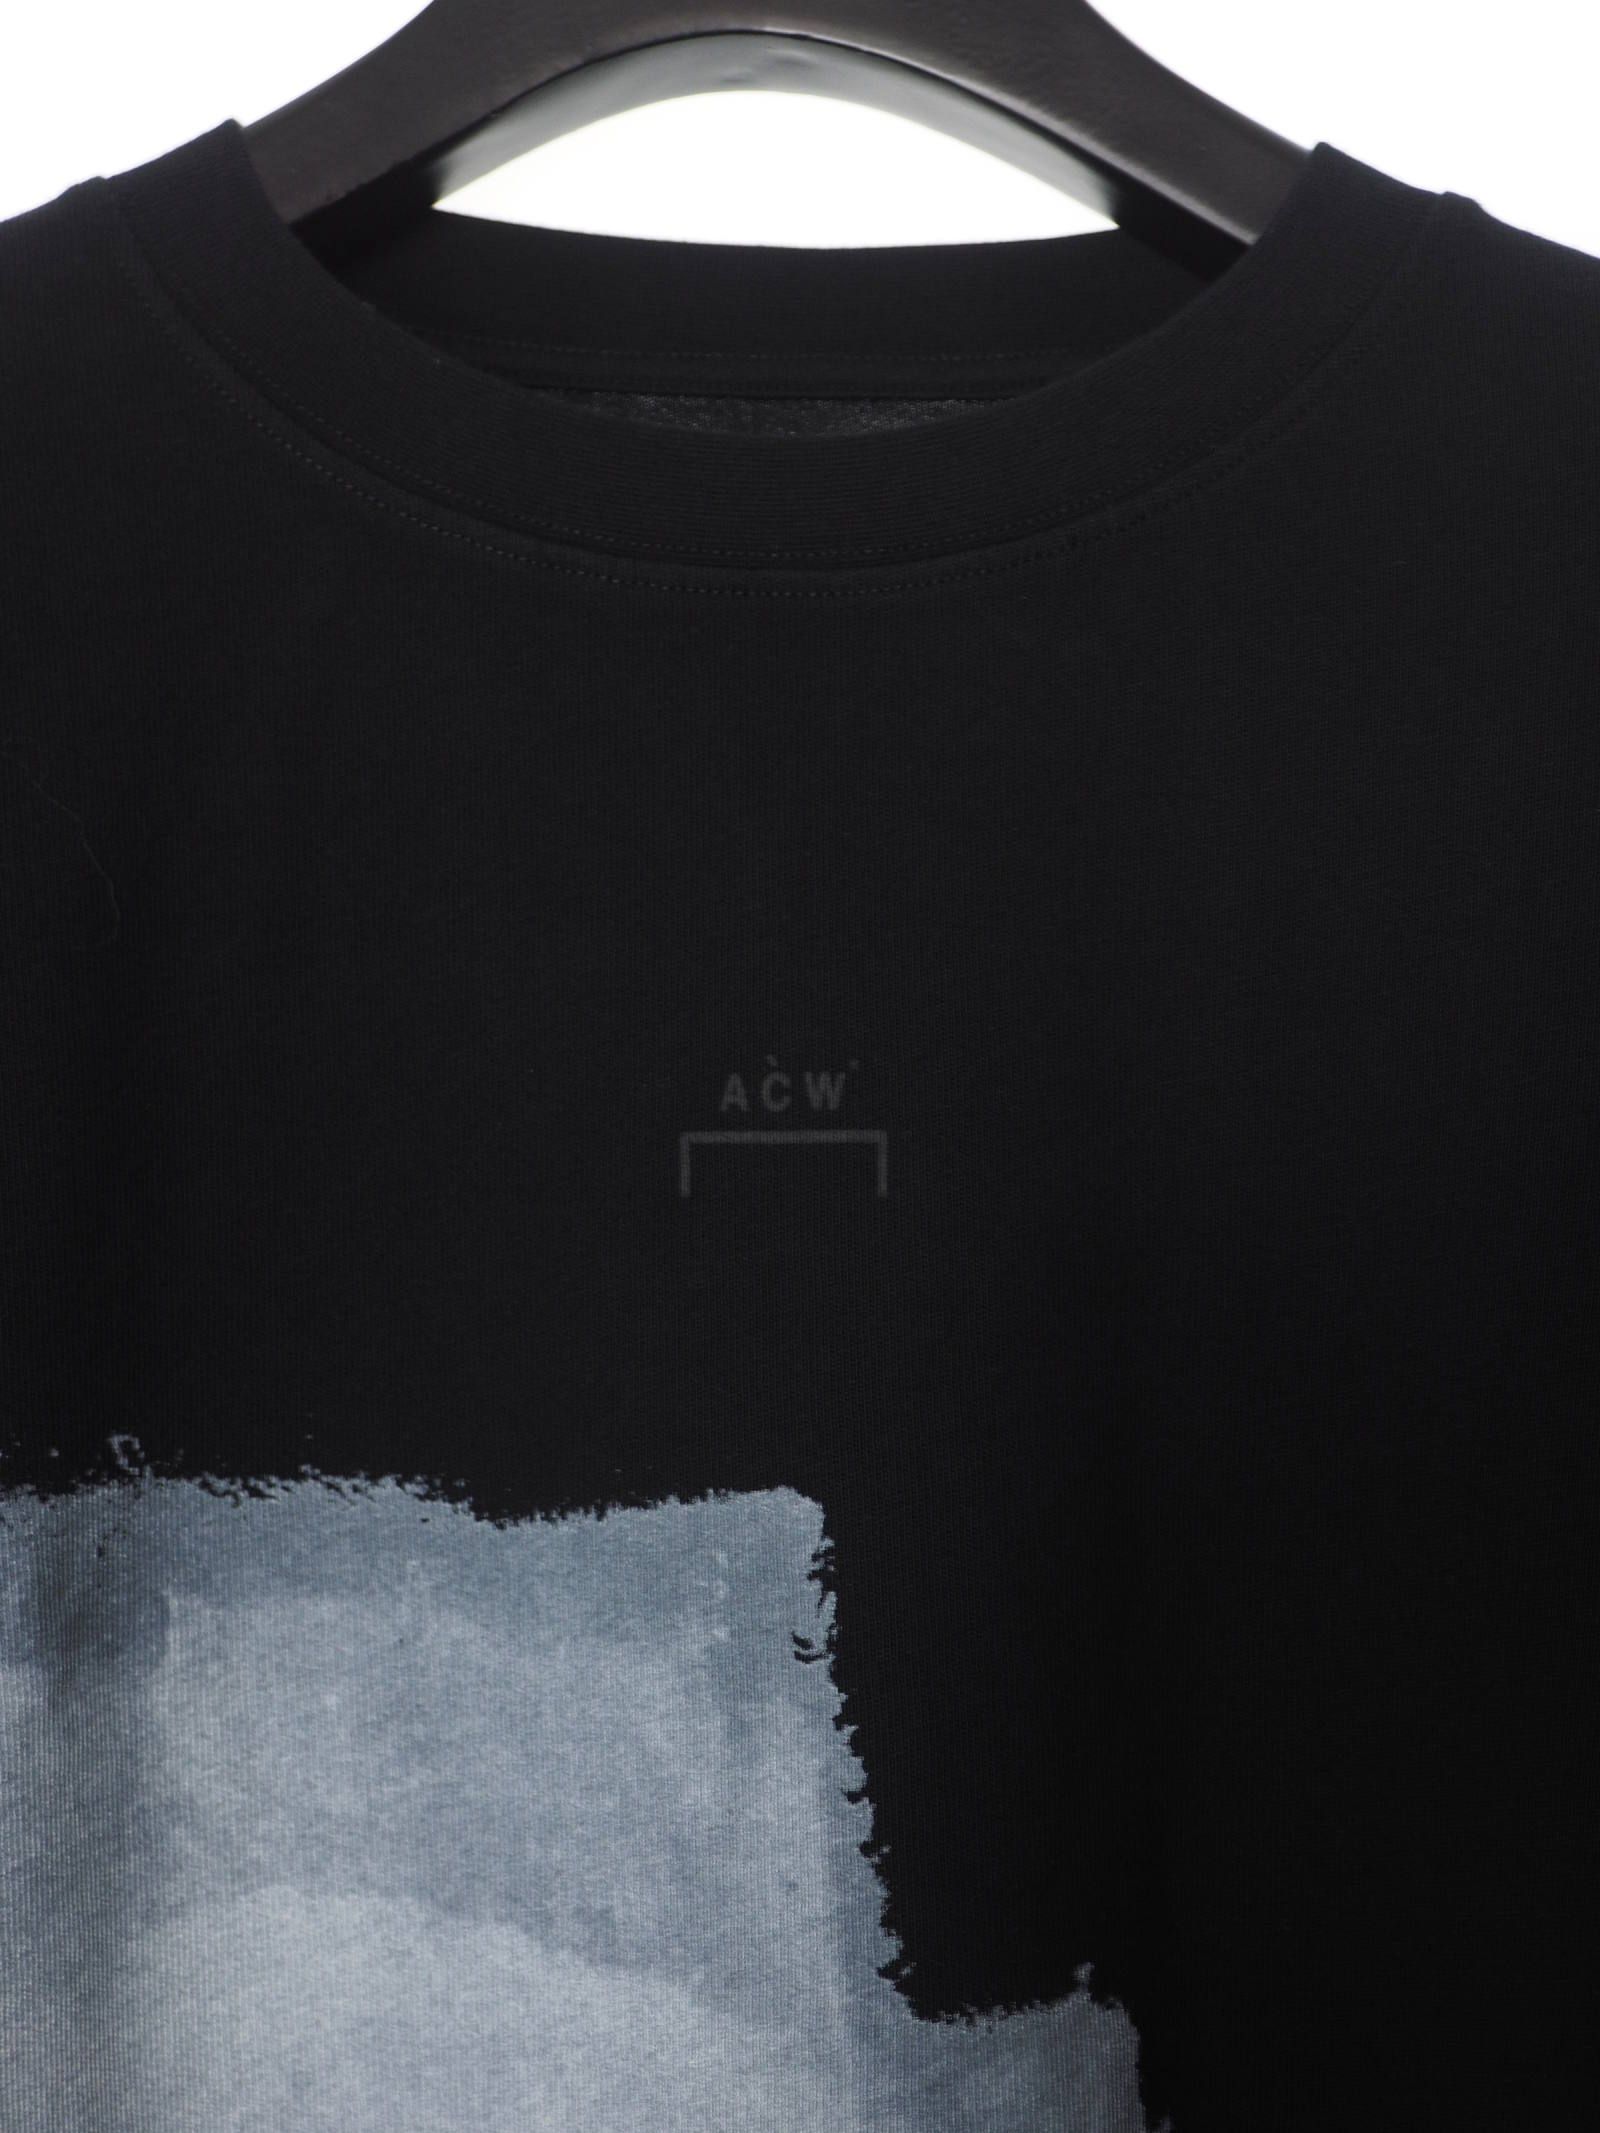 【新品タグ付】A-COLD-WALL インサイドアウト ワッペン Tシャツ